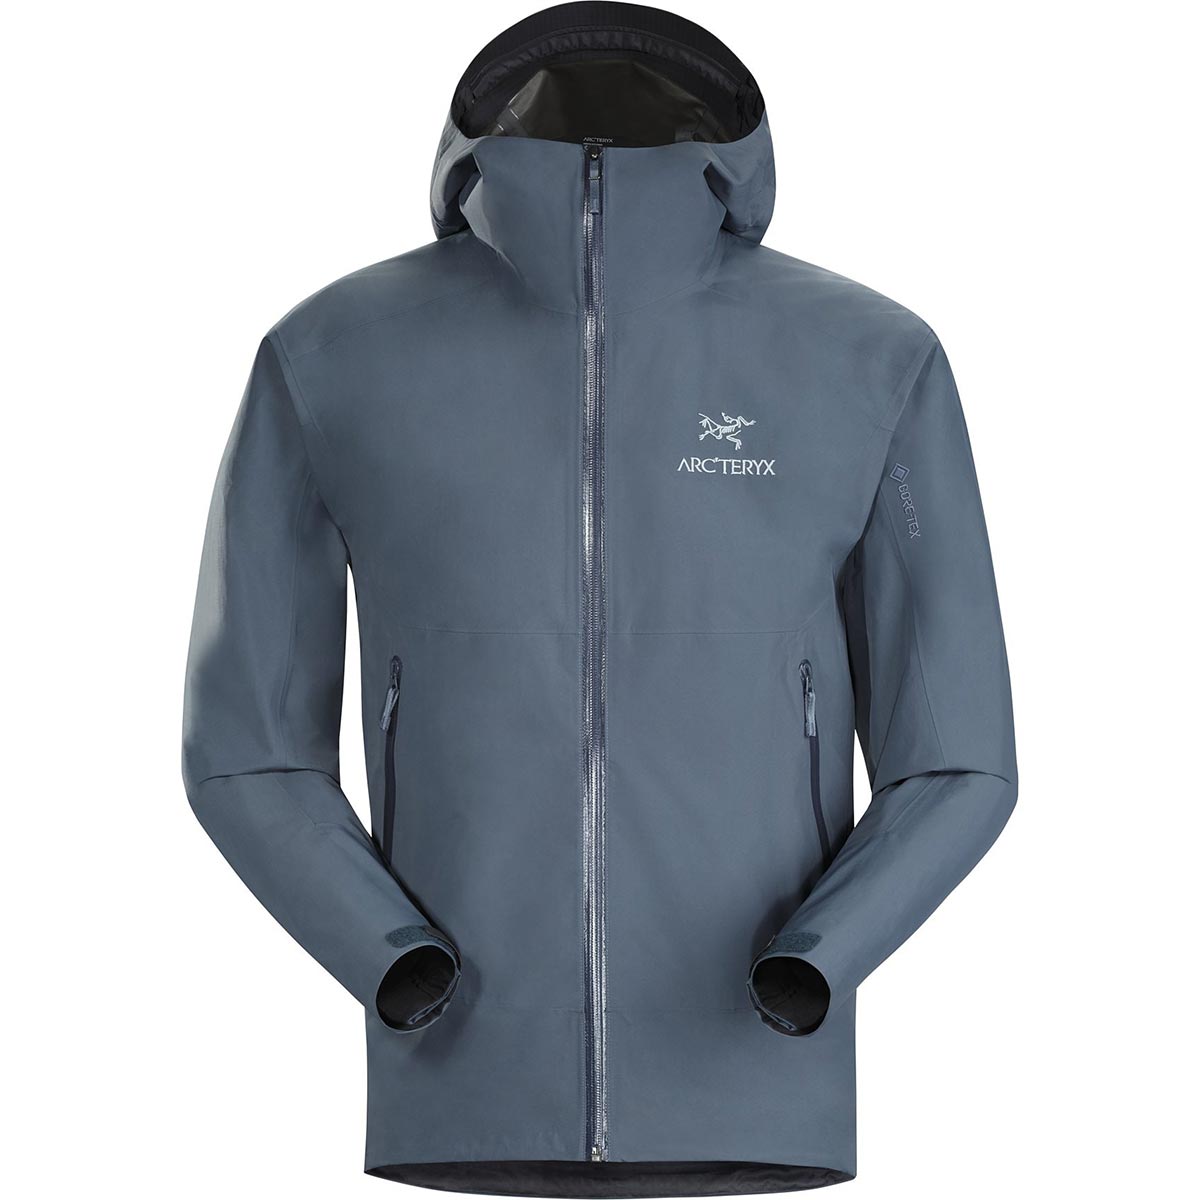 Arc'teryx Zeta SL Jacket, men's, discontinued Fall 2019 colors 